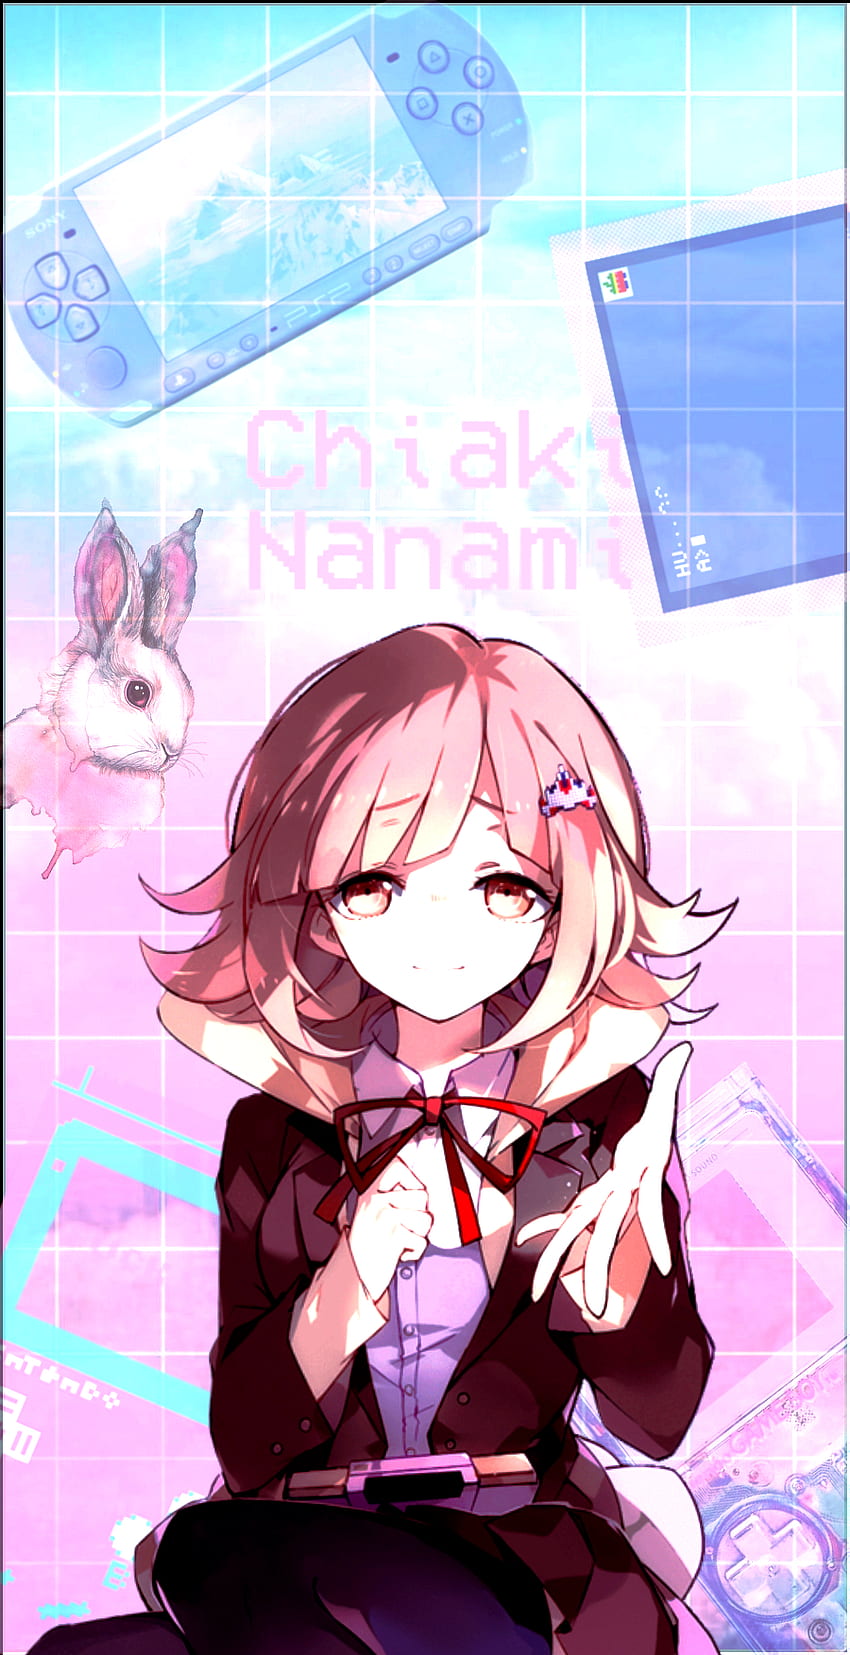 Saya membuat Chiaki Nanami. Tidak ada milik saya, semua wallpaper ponsel HD